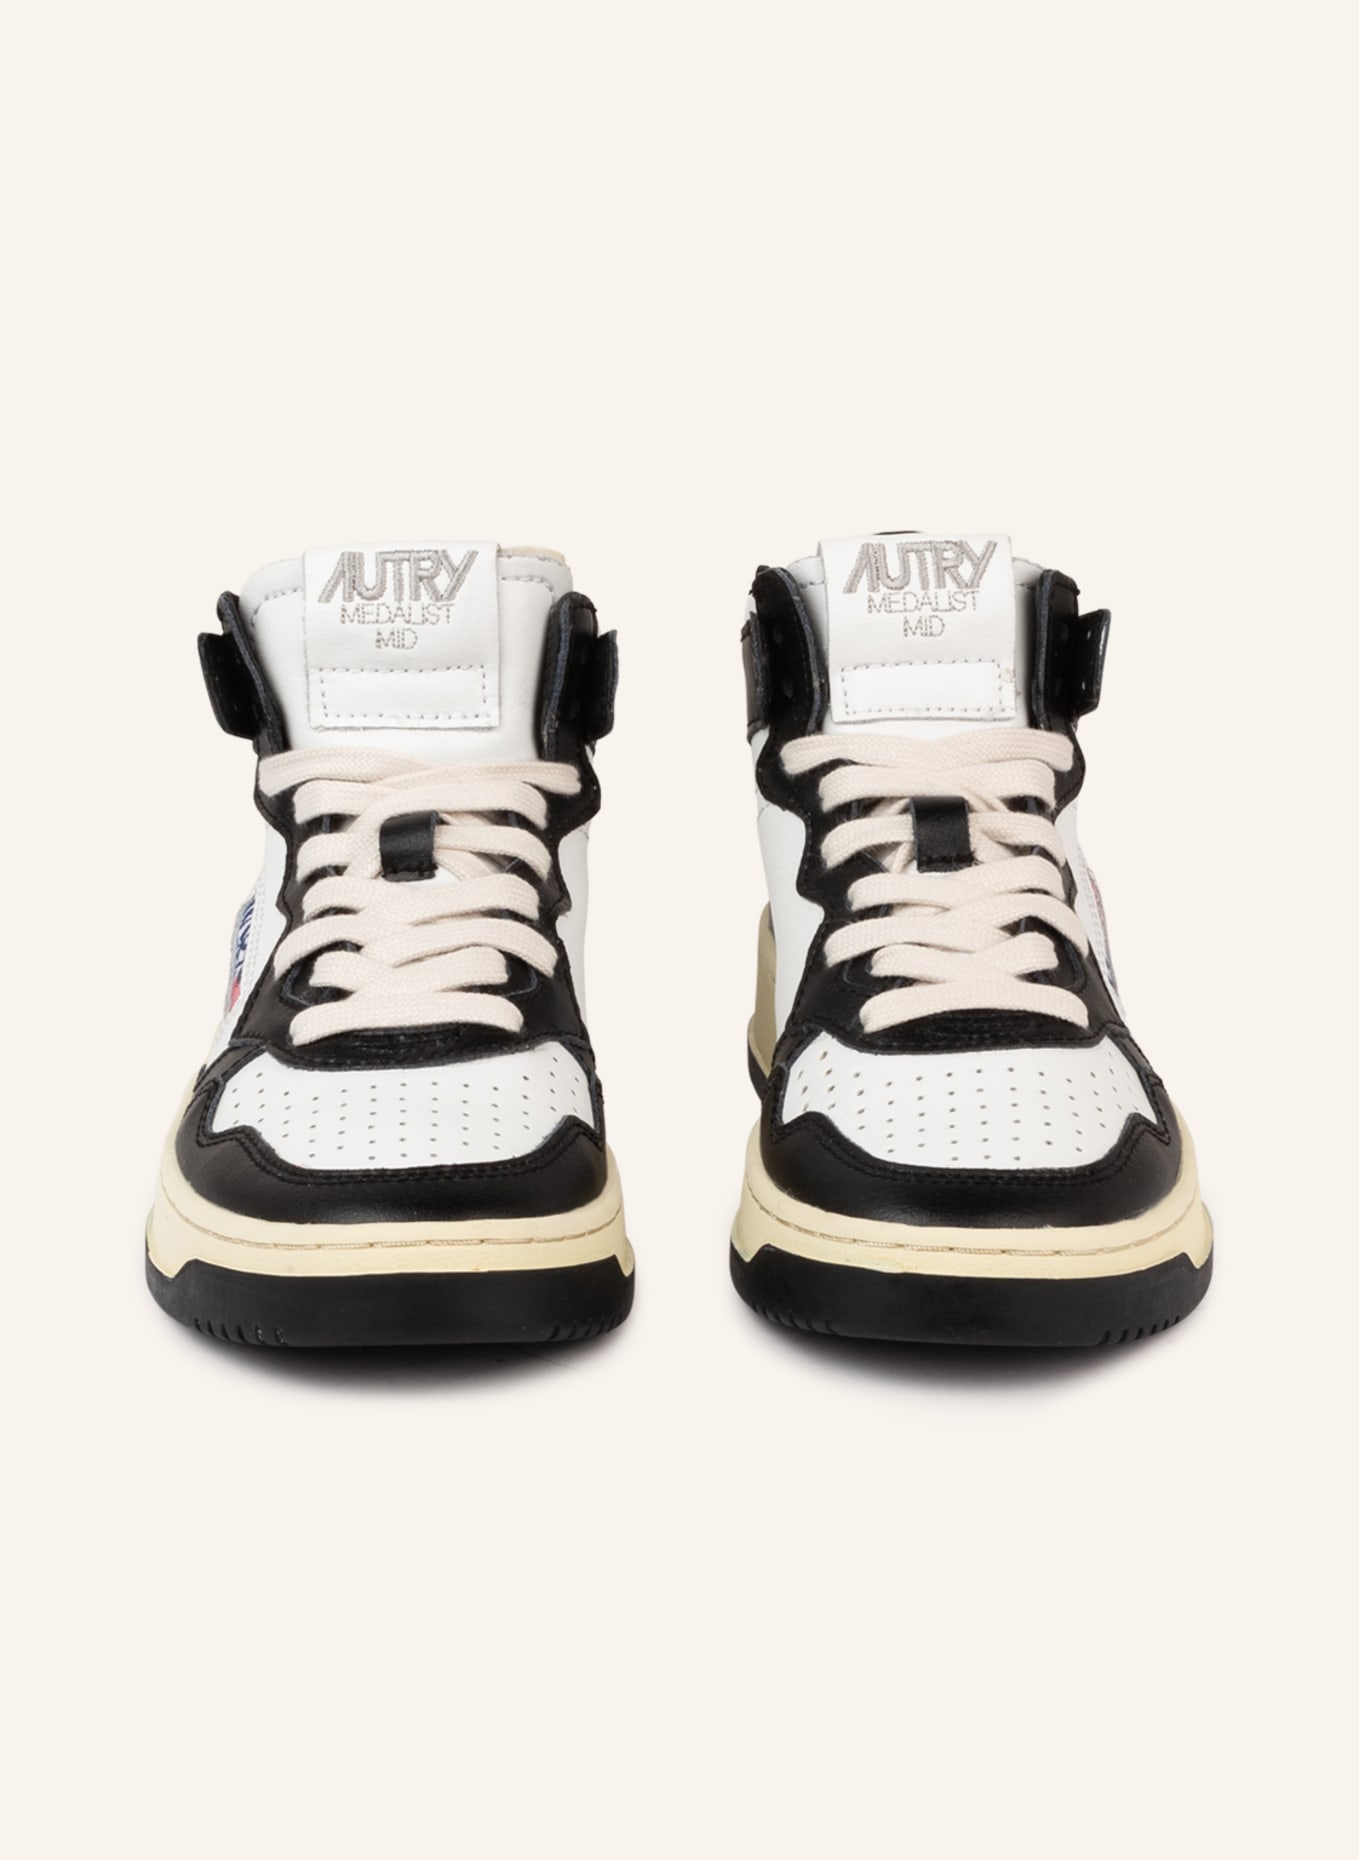 AUTRY Hightop-Sneaker MEDALIST, Farbe: WEISS/ SCHWARZ (Bild 3)